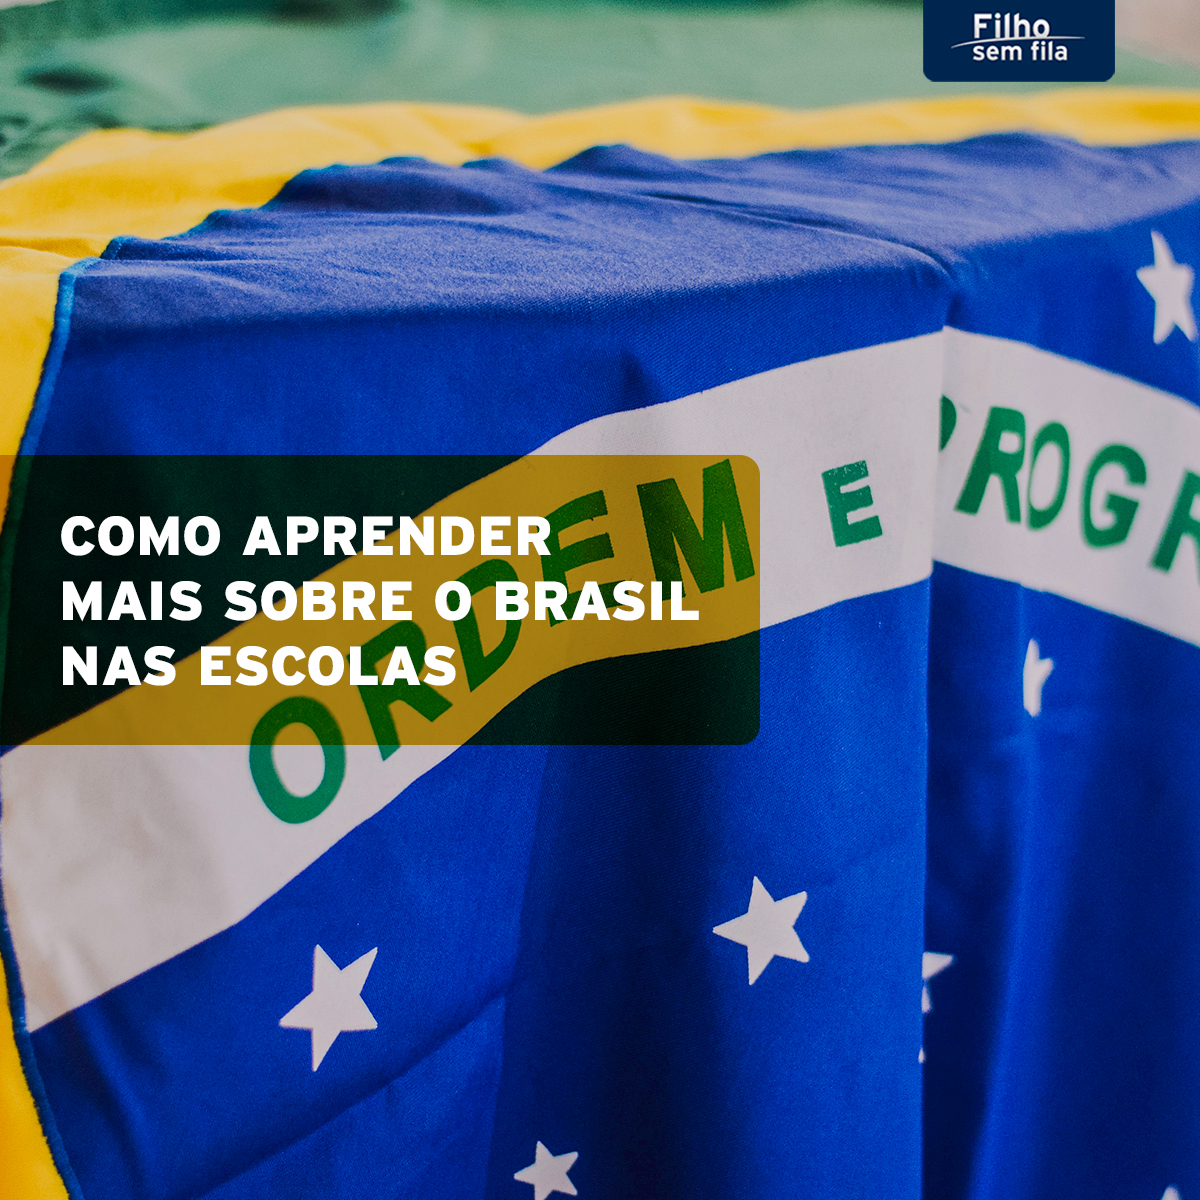 Aprender sobre o Brasil